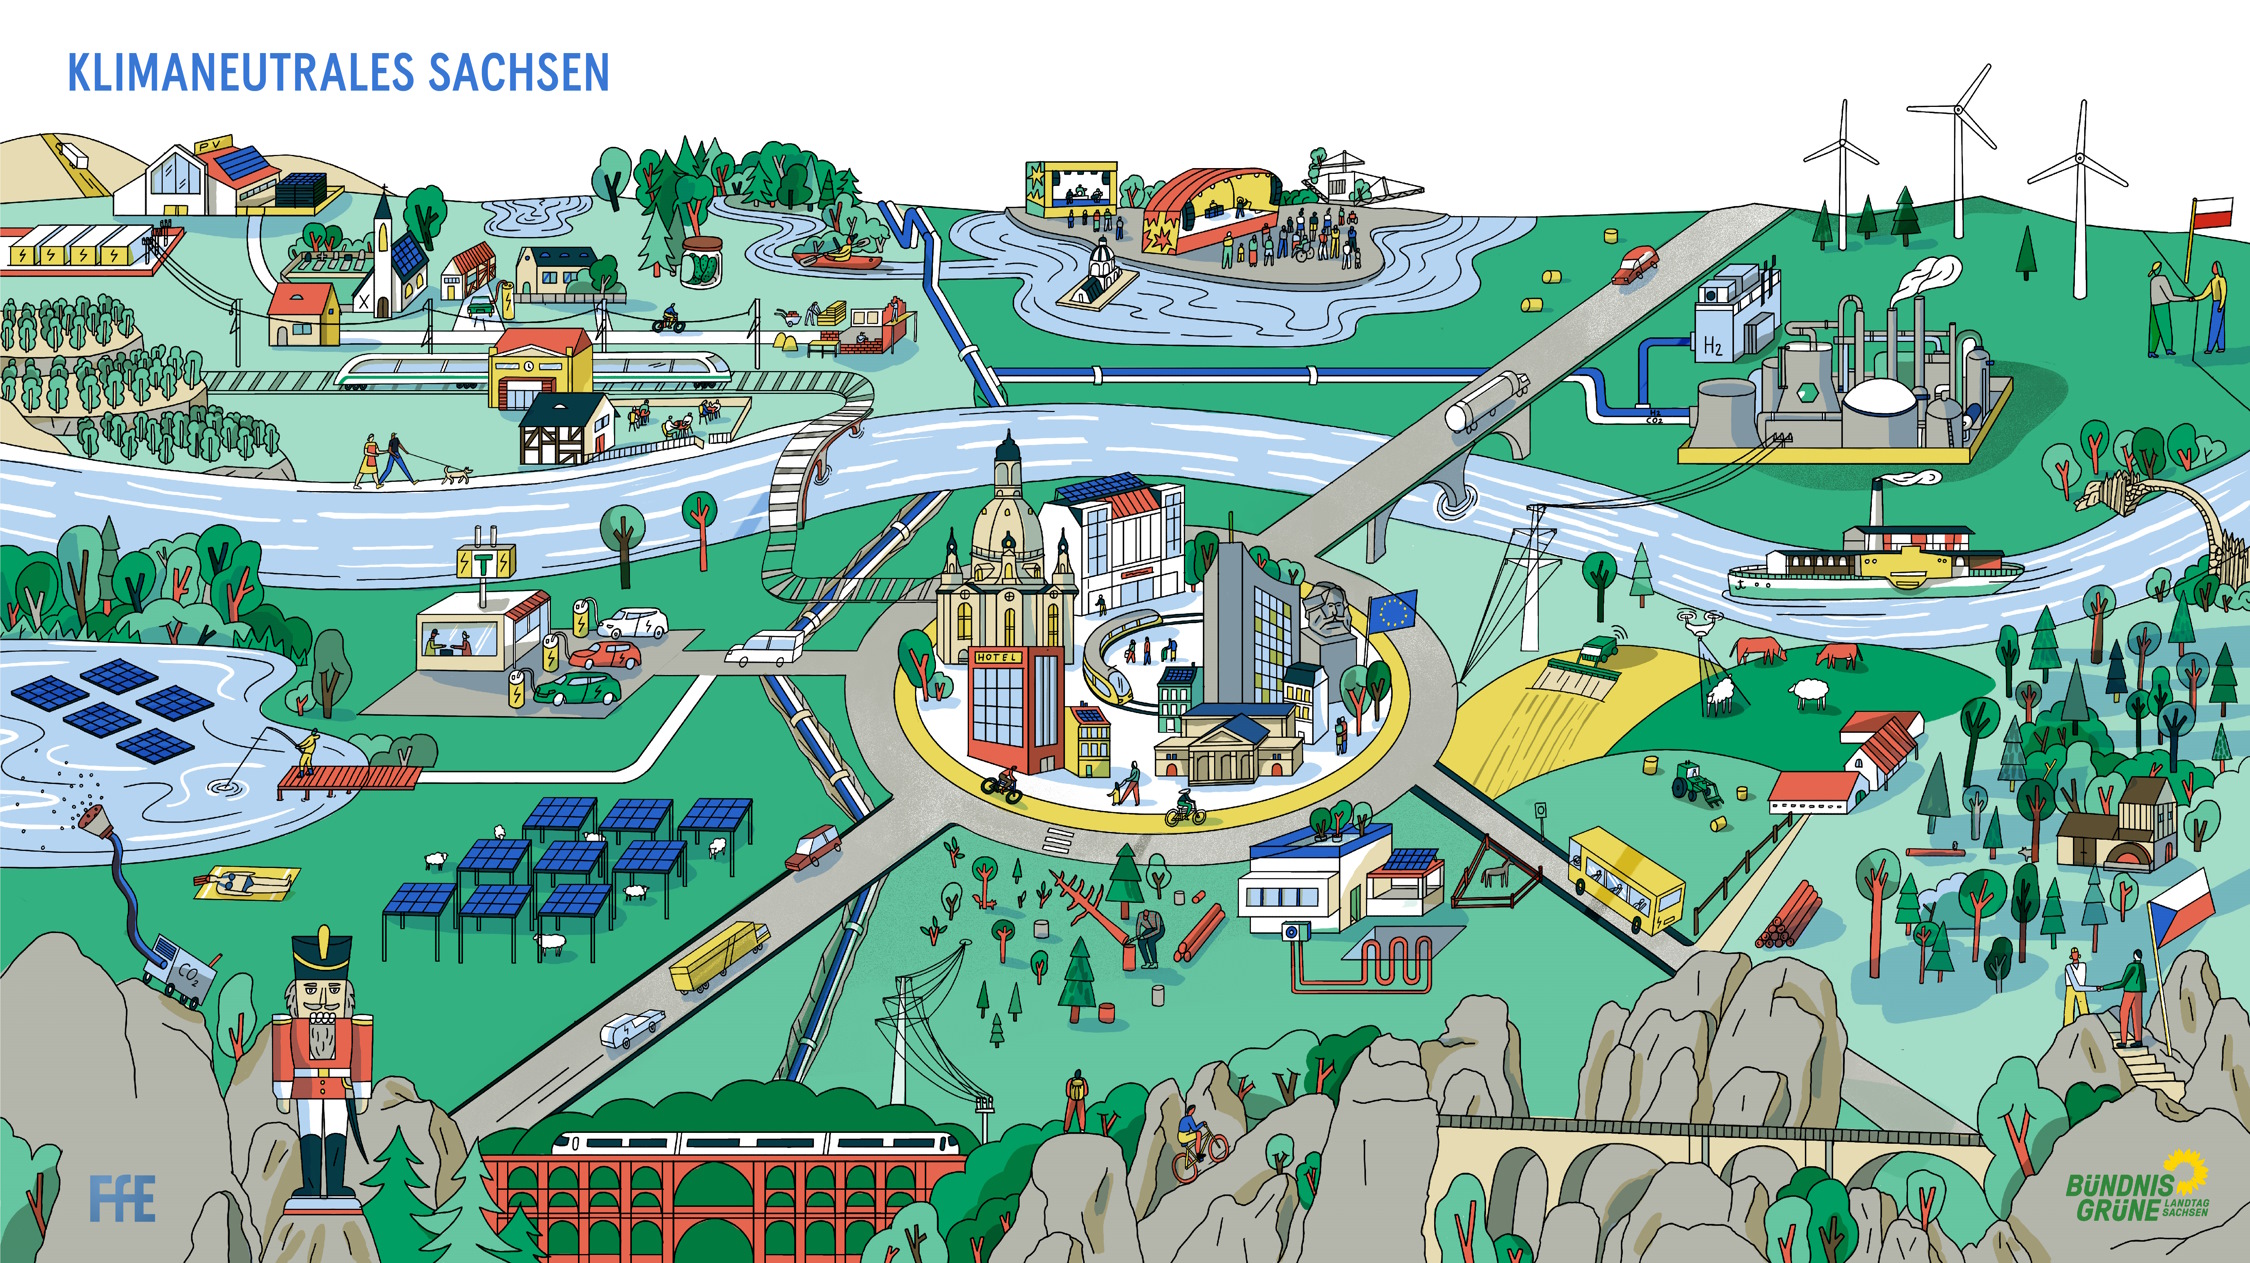 Ein Wimmelbild zur Klimaneutralität in Sachsen. Grafik: Grüne Fraktion Sachsen, FfE